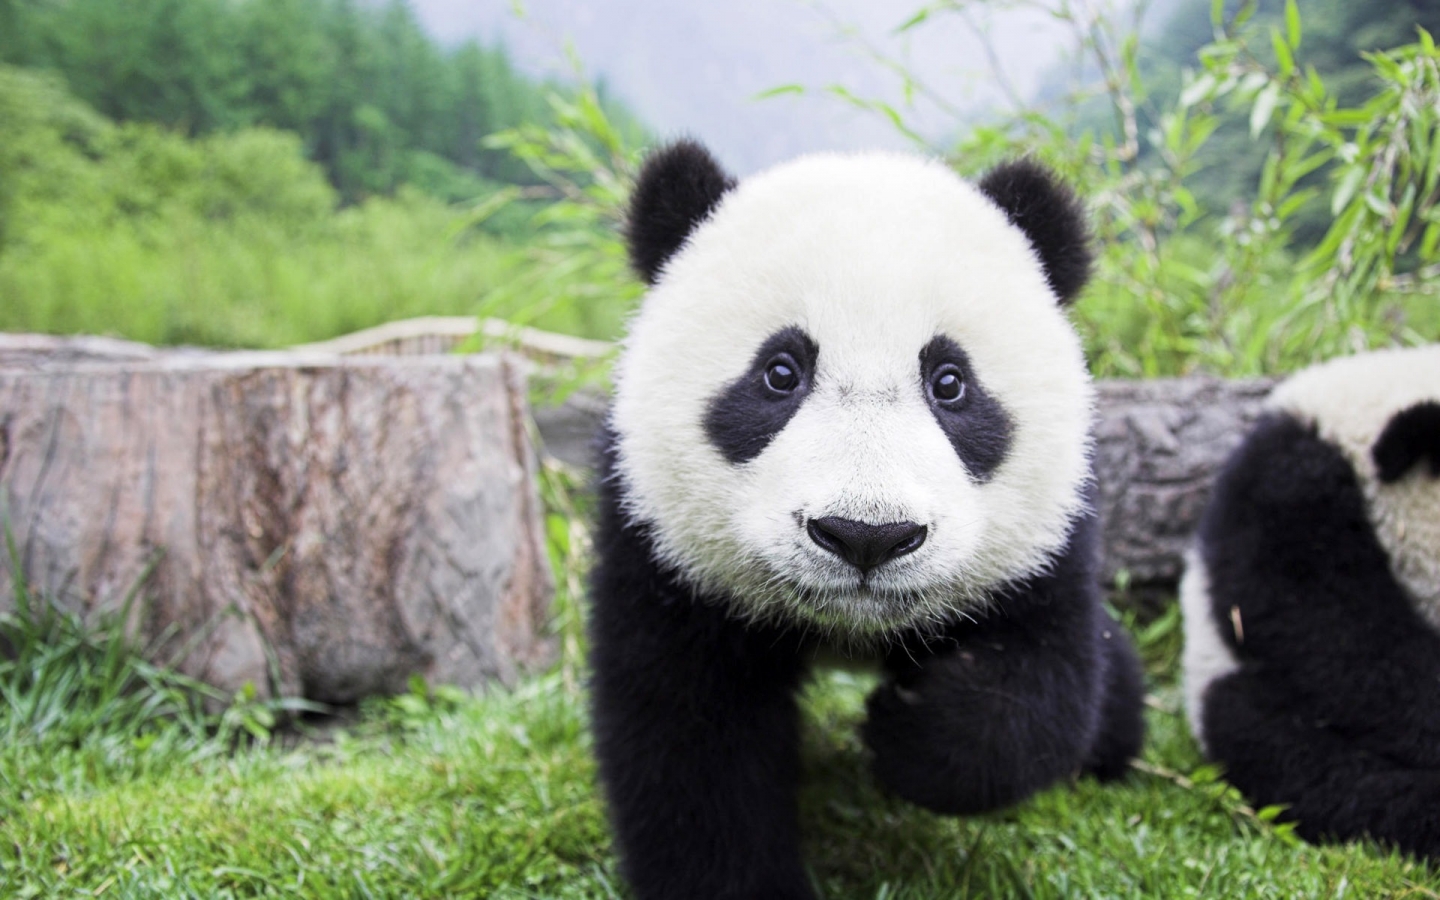 Beautiful Baby Panda for 1440 x 900 widescreen resolution